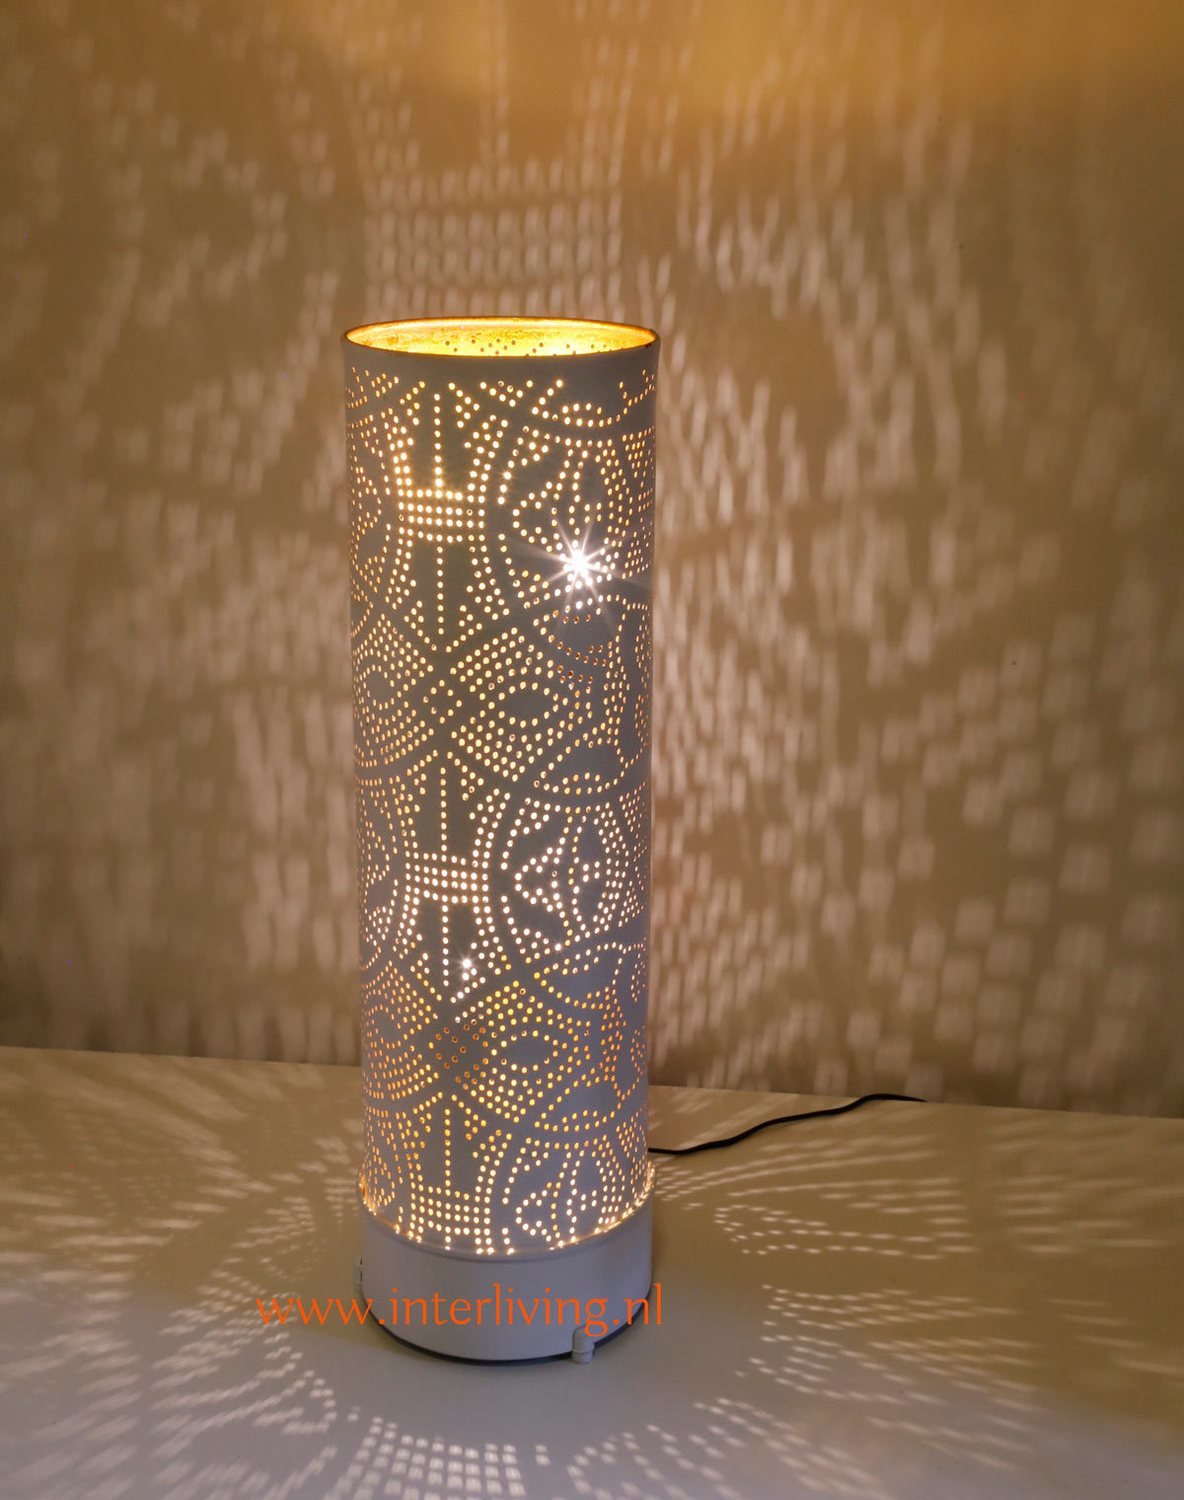 oosterse vloerlamp of staande lamp met filigrain gaatjes patronen van  metaal - wit met goud- diverse maten